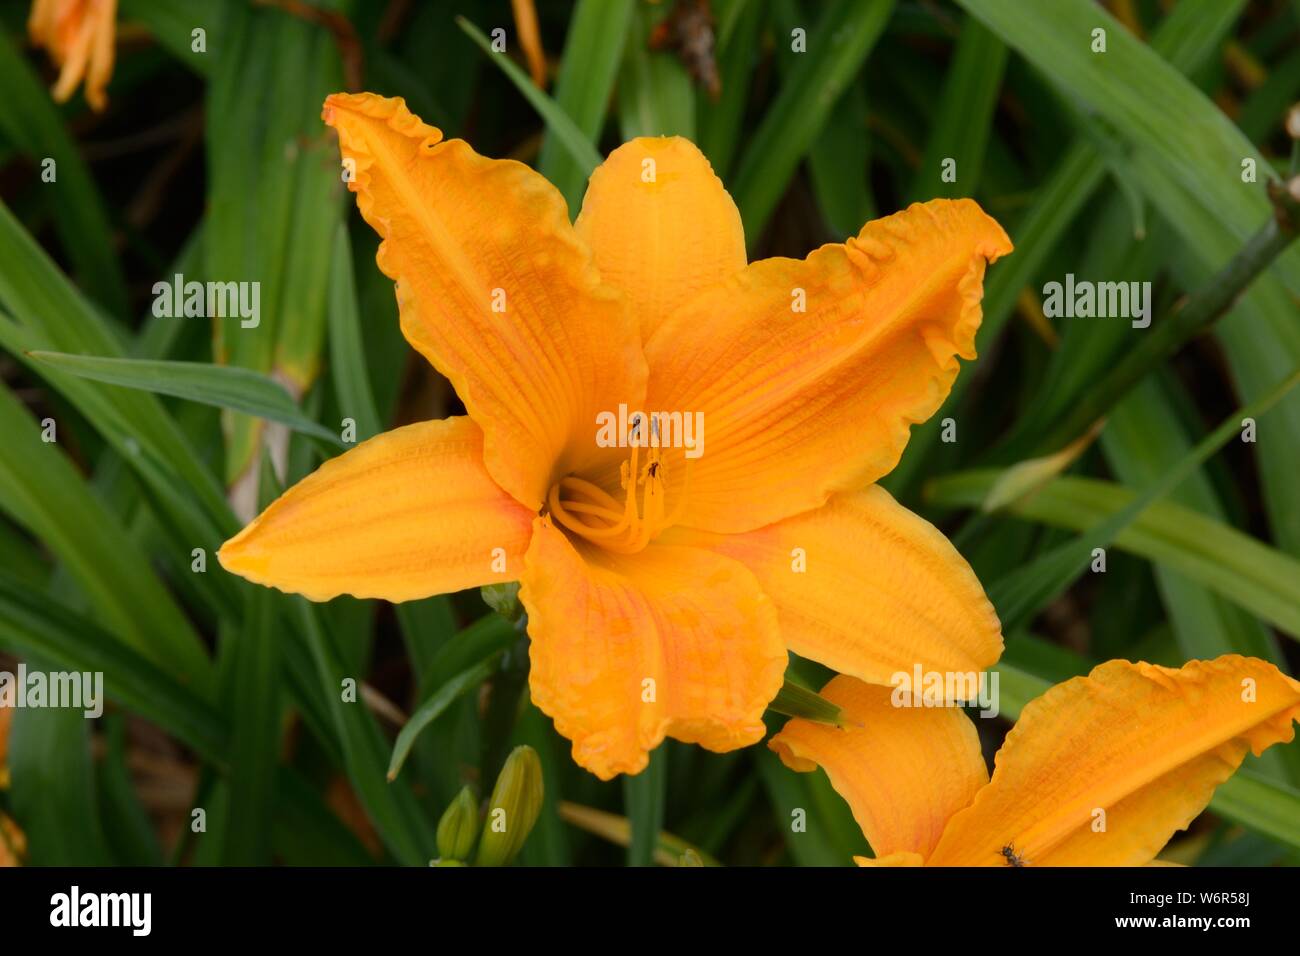 Hemerocallis Burning Daylight daylily fragrant orange yellow trumpet shaped flowers Stock Photo